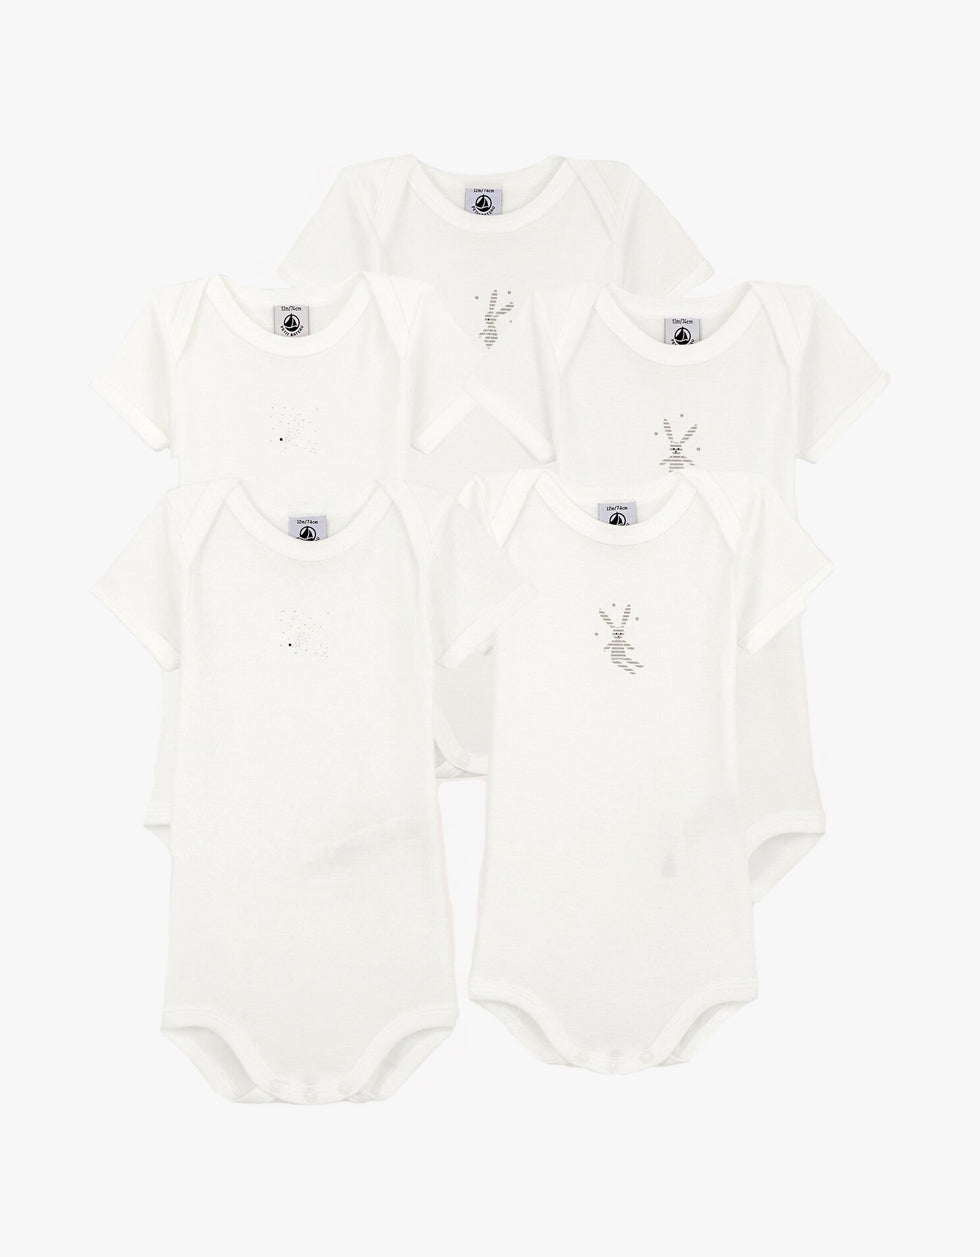 Babie's Rabbit Pattern Short-Sleeved Bodysuit - 5-Pack